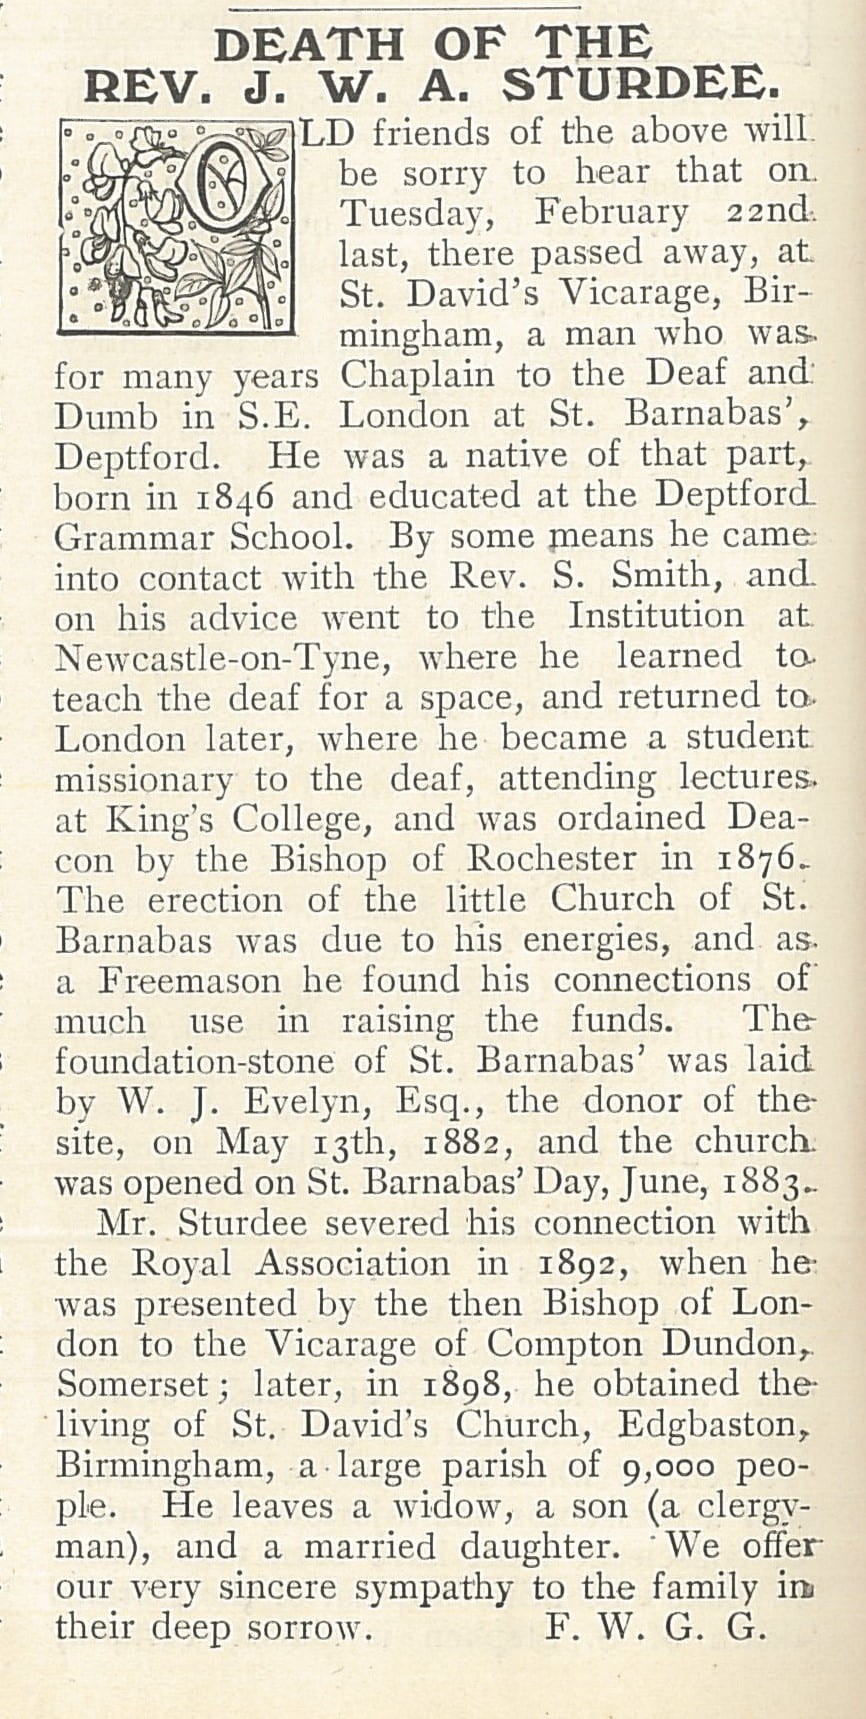 Sturdee obituary 1910 Ephphatha p.78